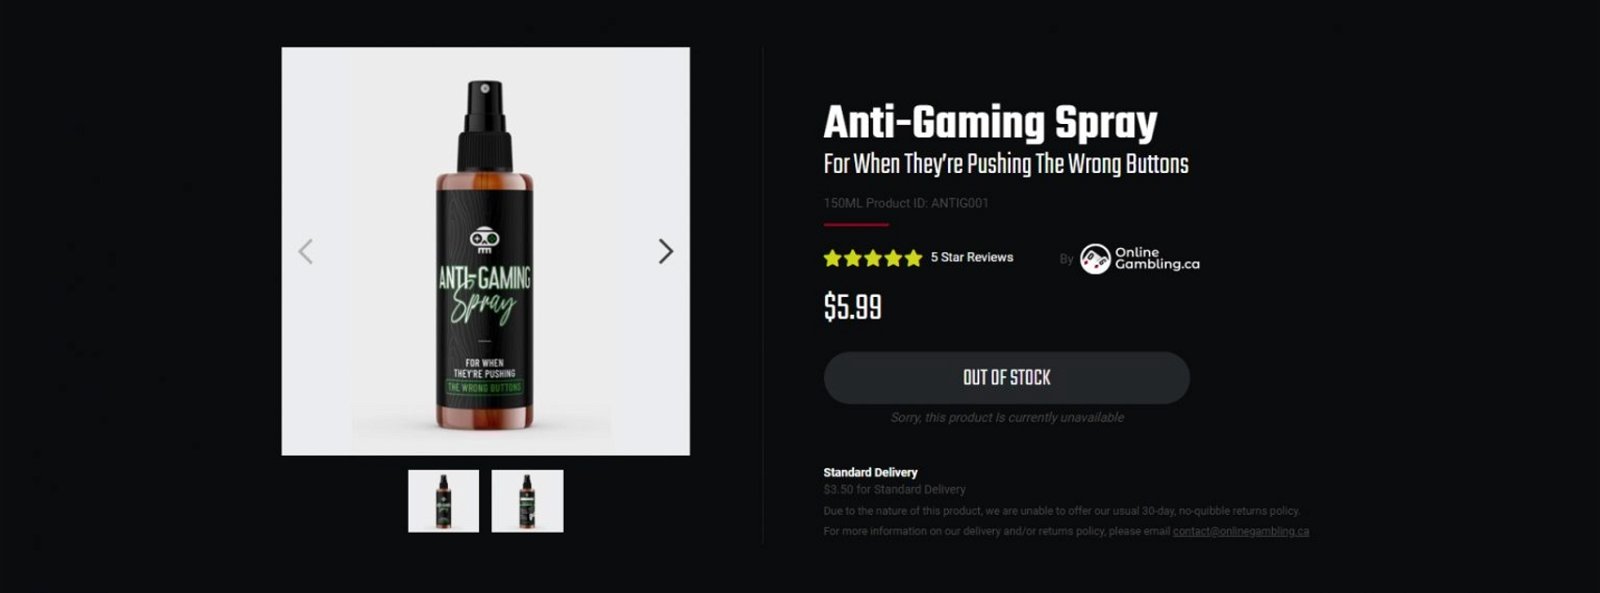 Un casino vende un spray anti gamers